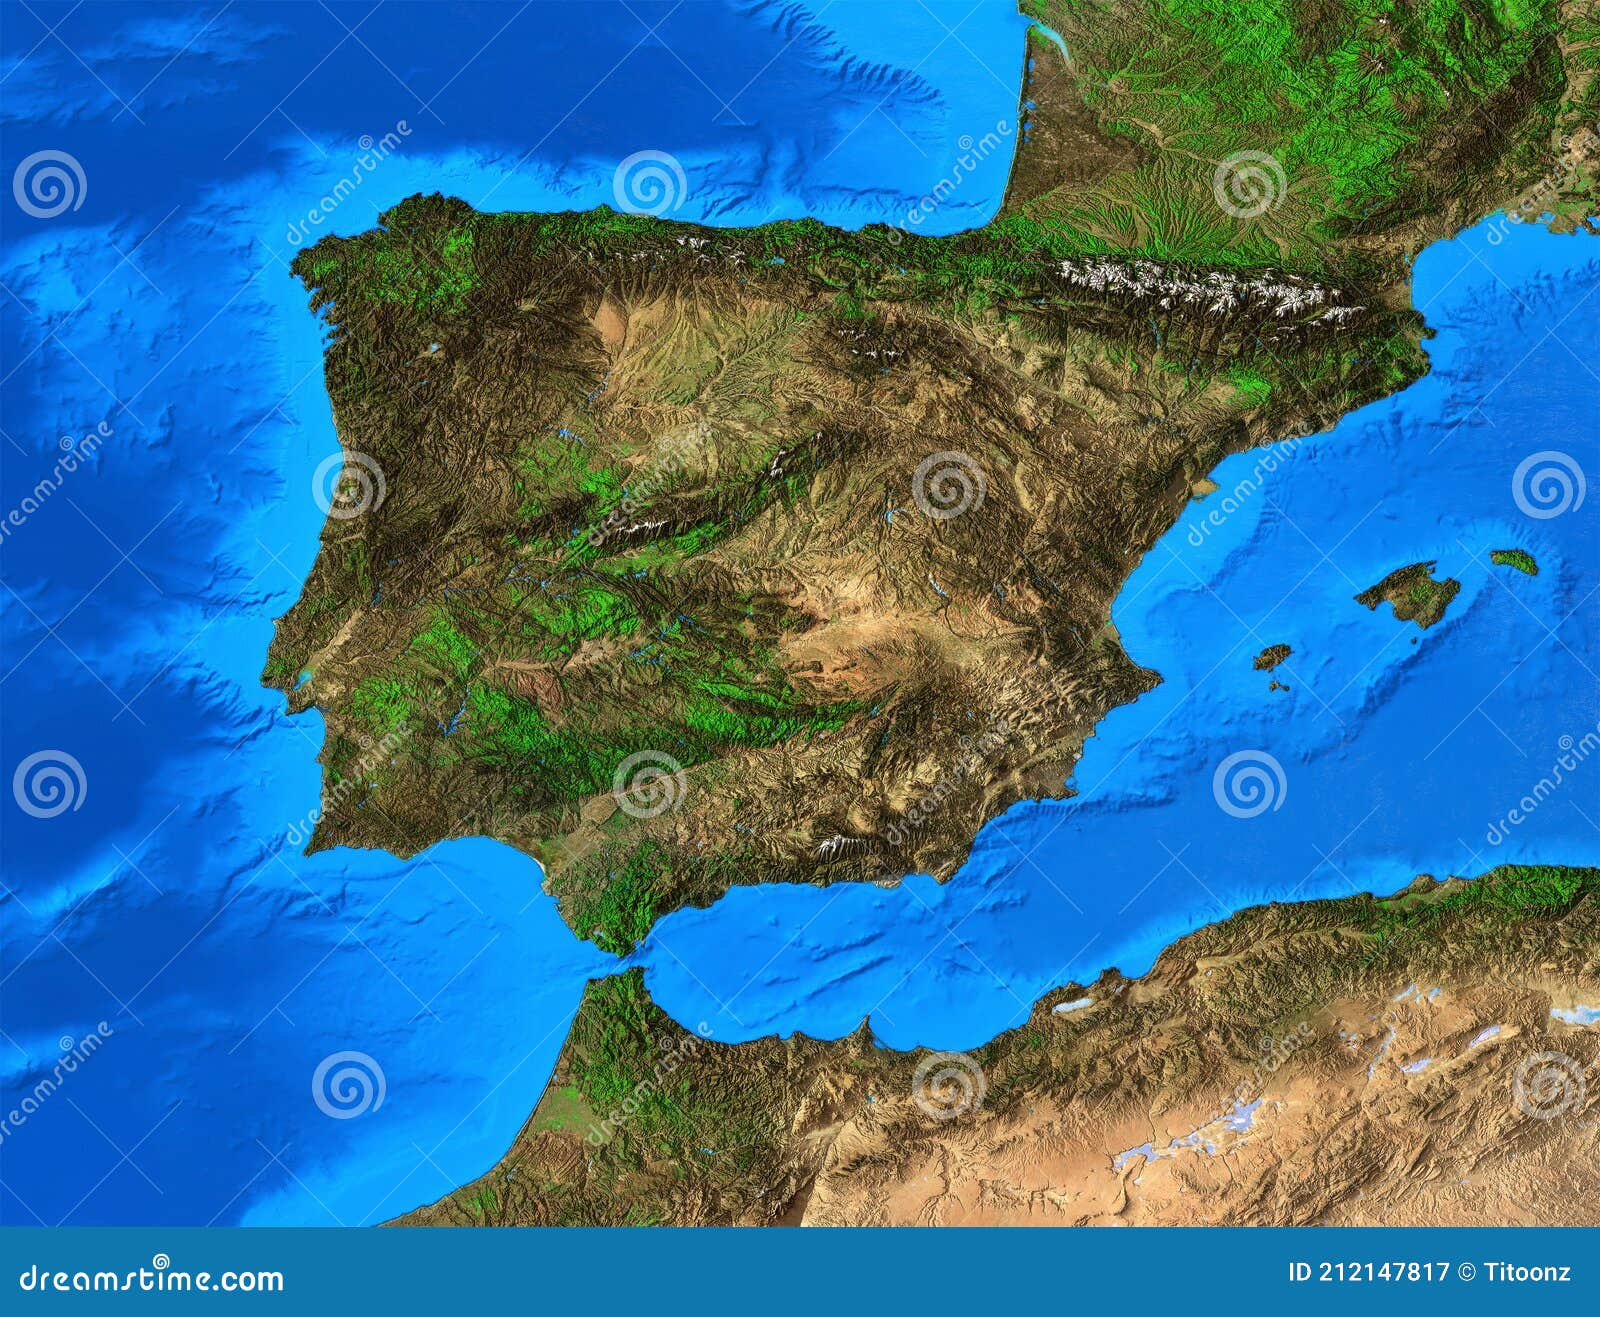 Mapa Físico De Espanha E Portugal De Alta Resolução Ilustração